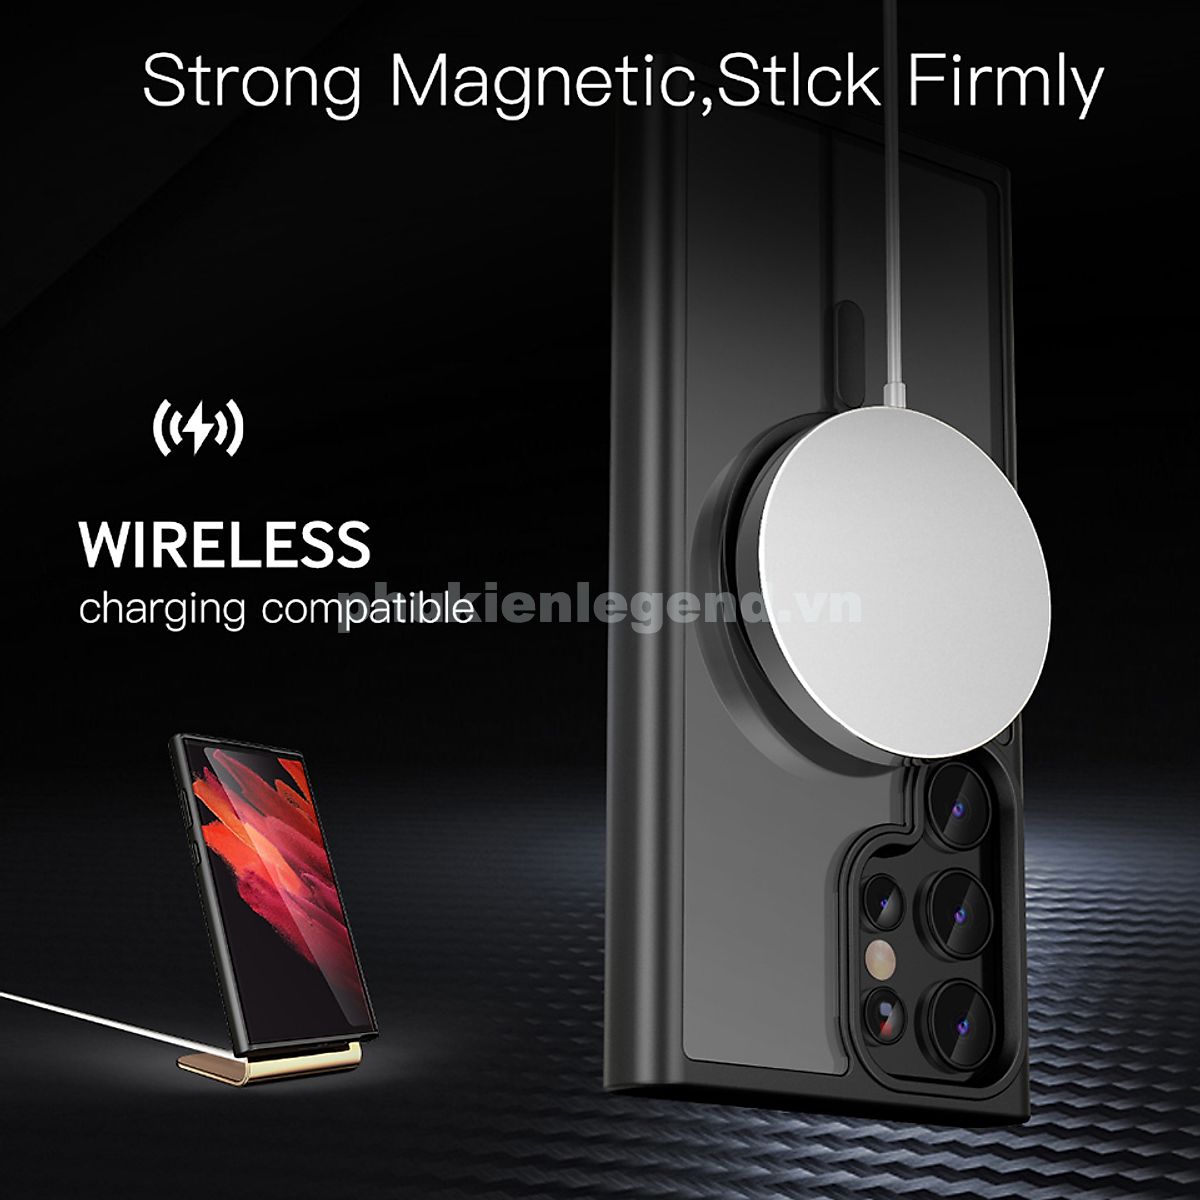 Ốp lưng nhám sạc từ tính cho Samsung Galaxy S24 Ultra hiệu Likgus PC Ultra-thin Frosted Magnetic Case - mặt lưng nhám mờ chống bám bẩn, gờ bảo vệ Camera 0.5mm - Hàng chính hãng